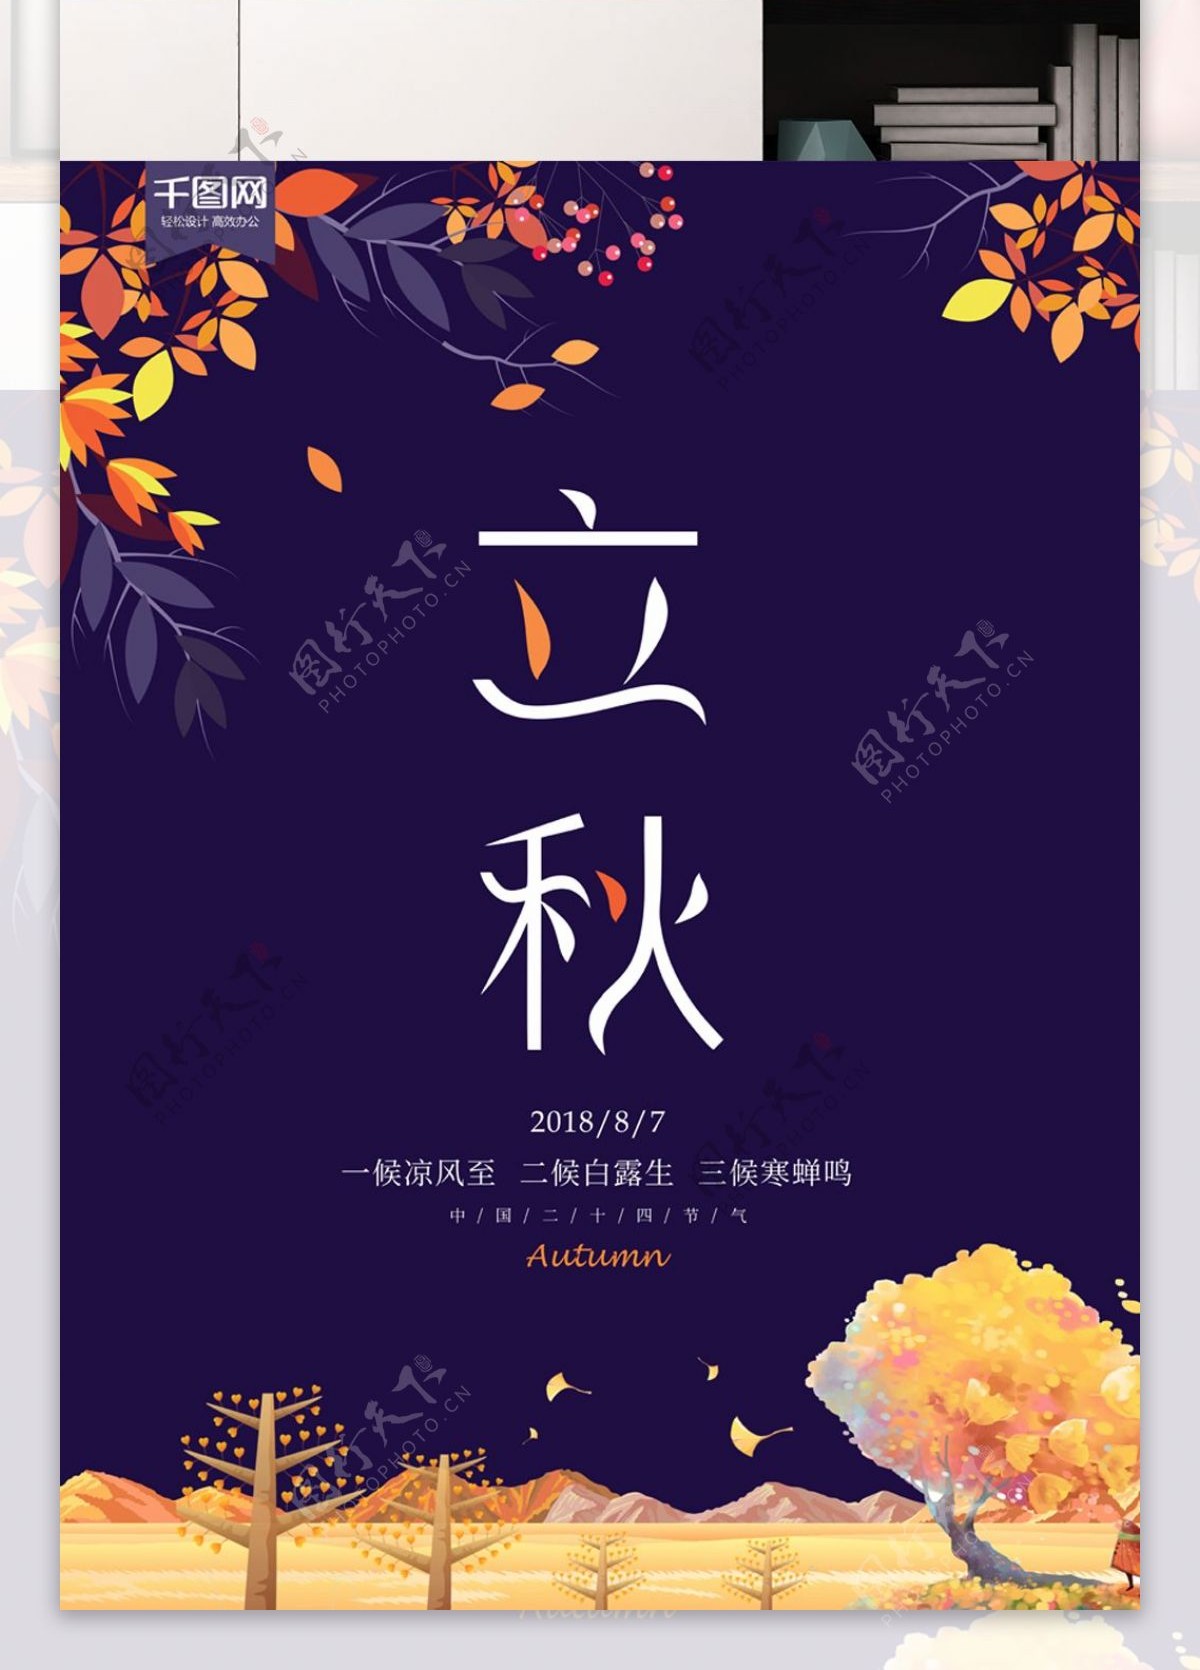 中国传统节气立秋宣传海报